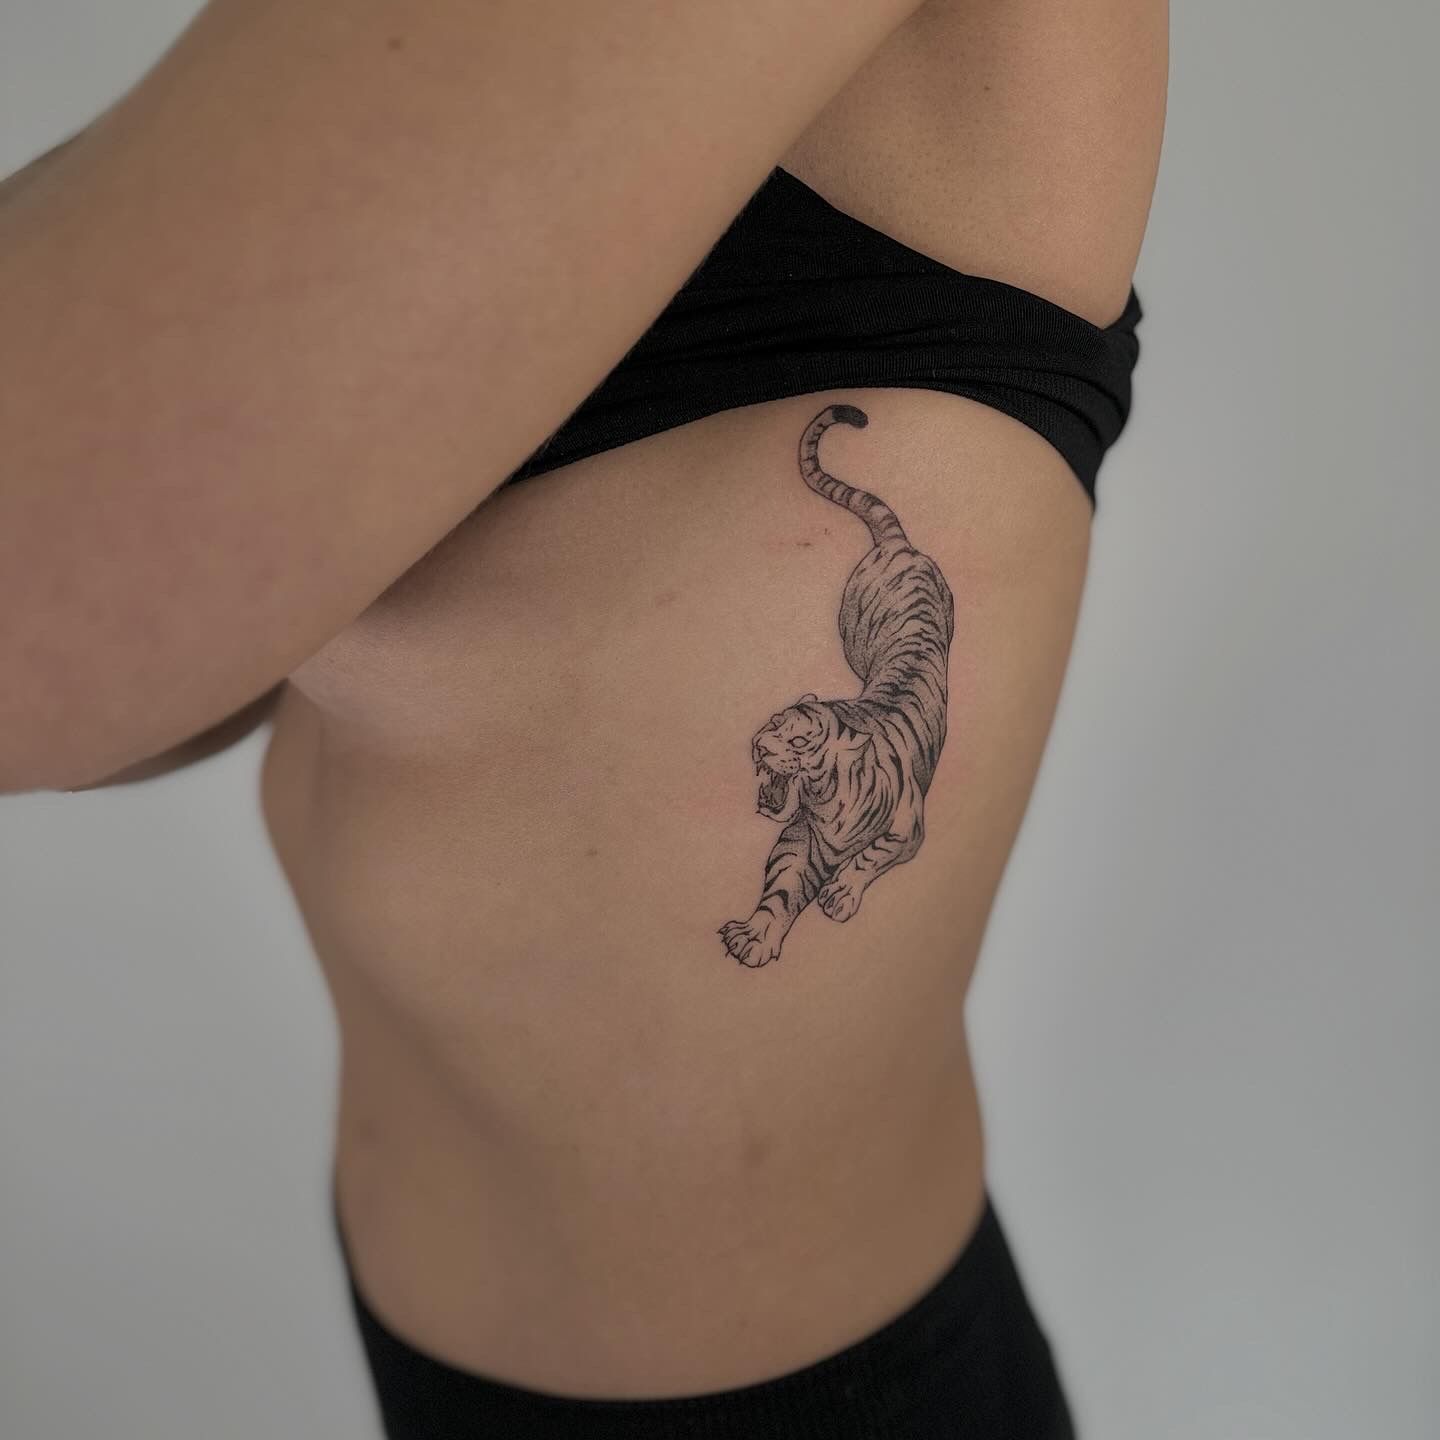 Tiger Tattoo On Arm - Tattoos Designs